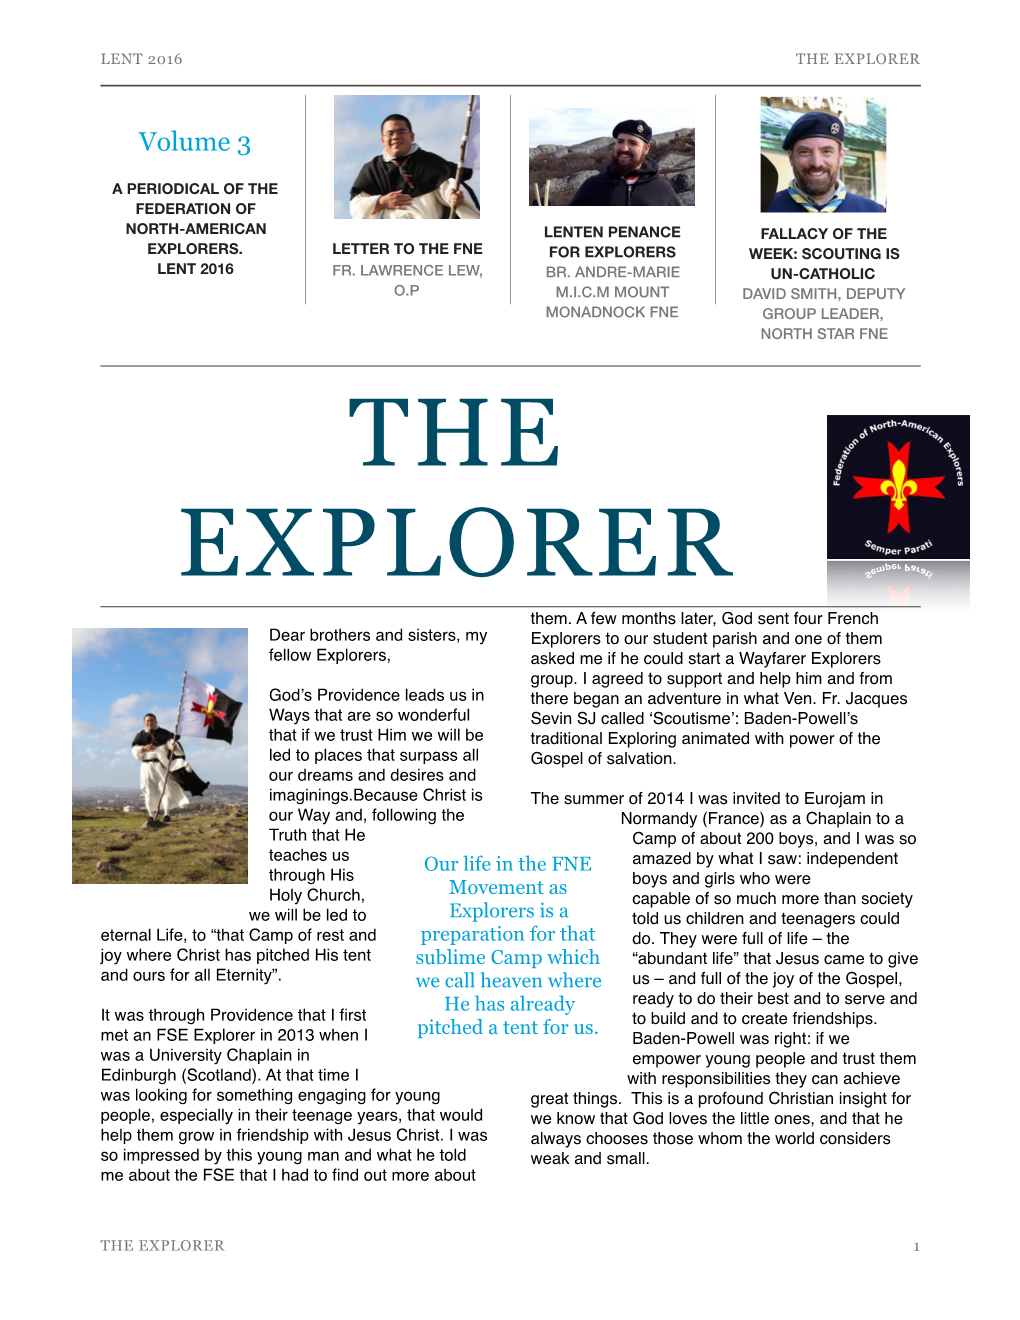 The Explorer Vol. 3 – Lent 2016